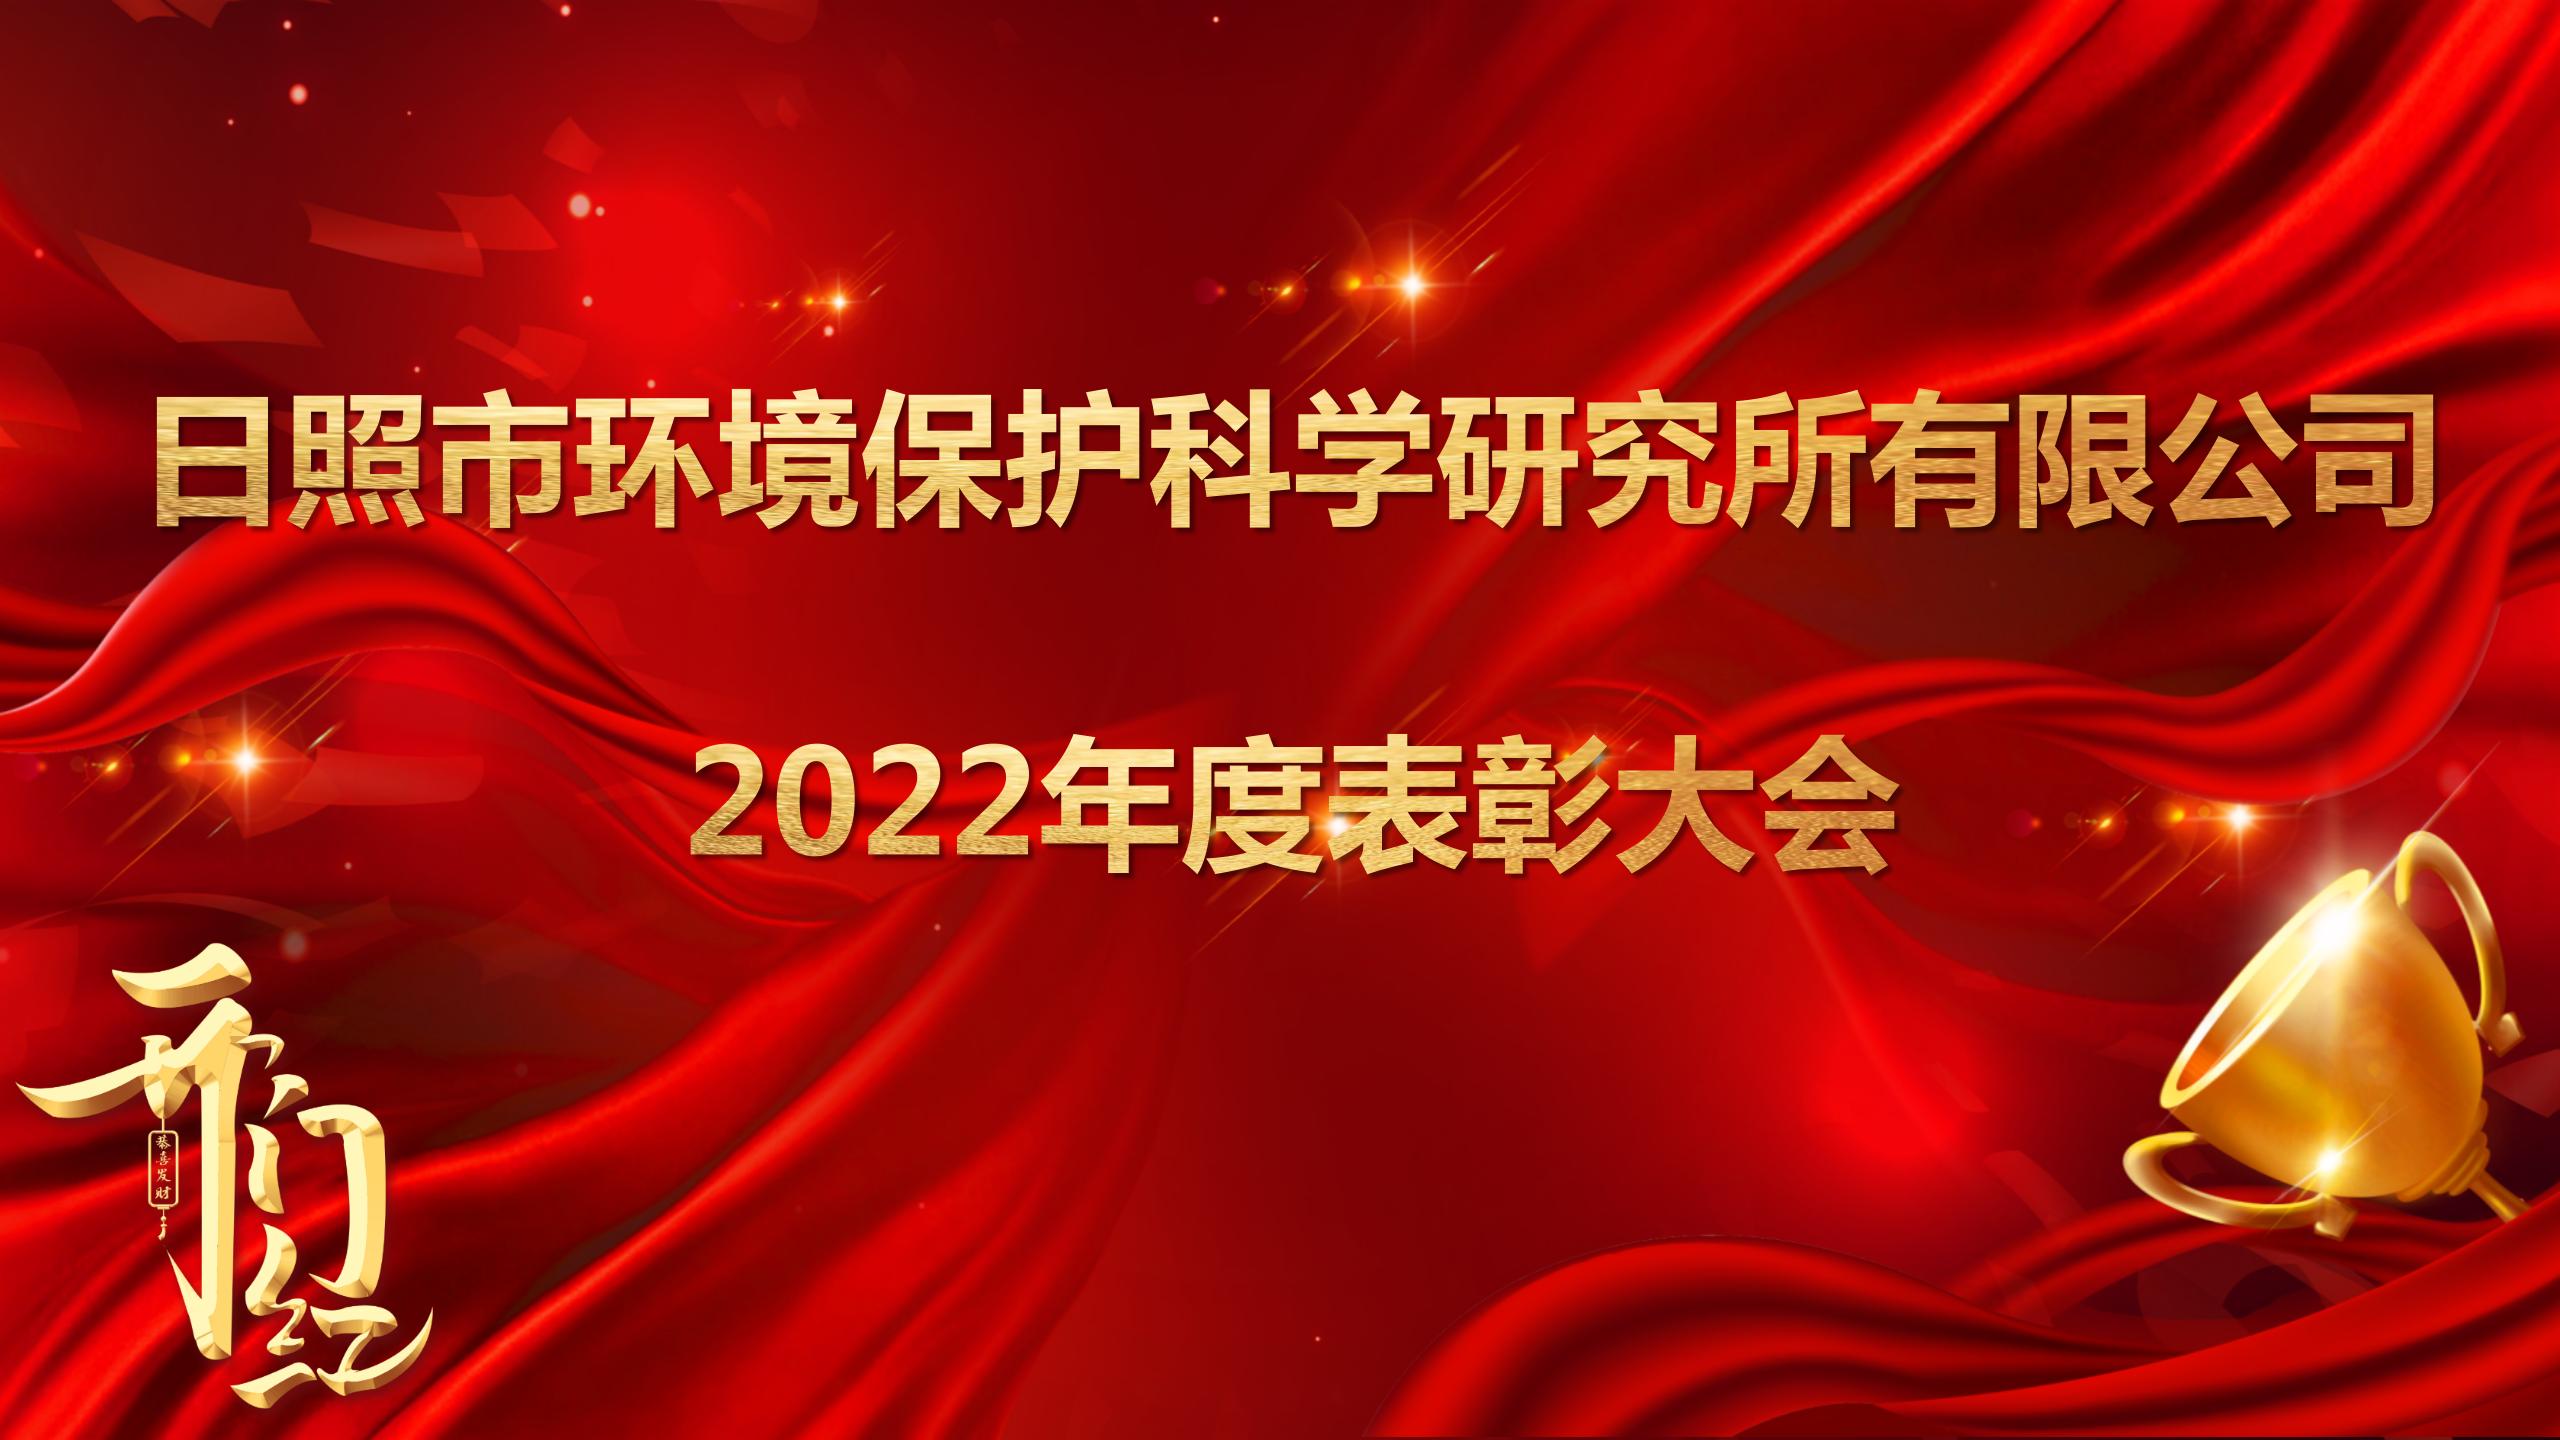 日照環科所公司召開2022年度表彰大會！